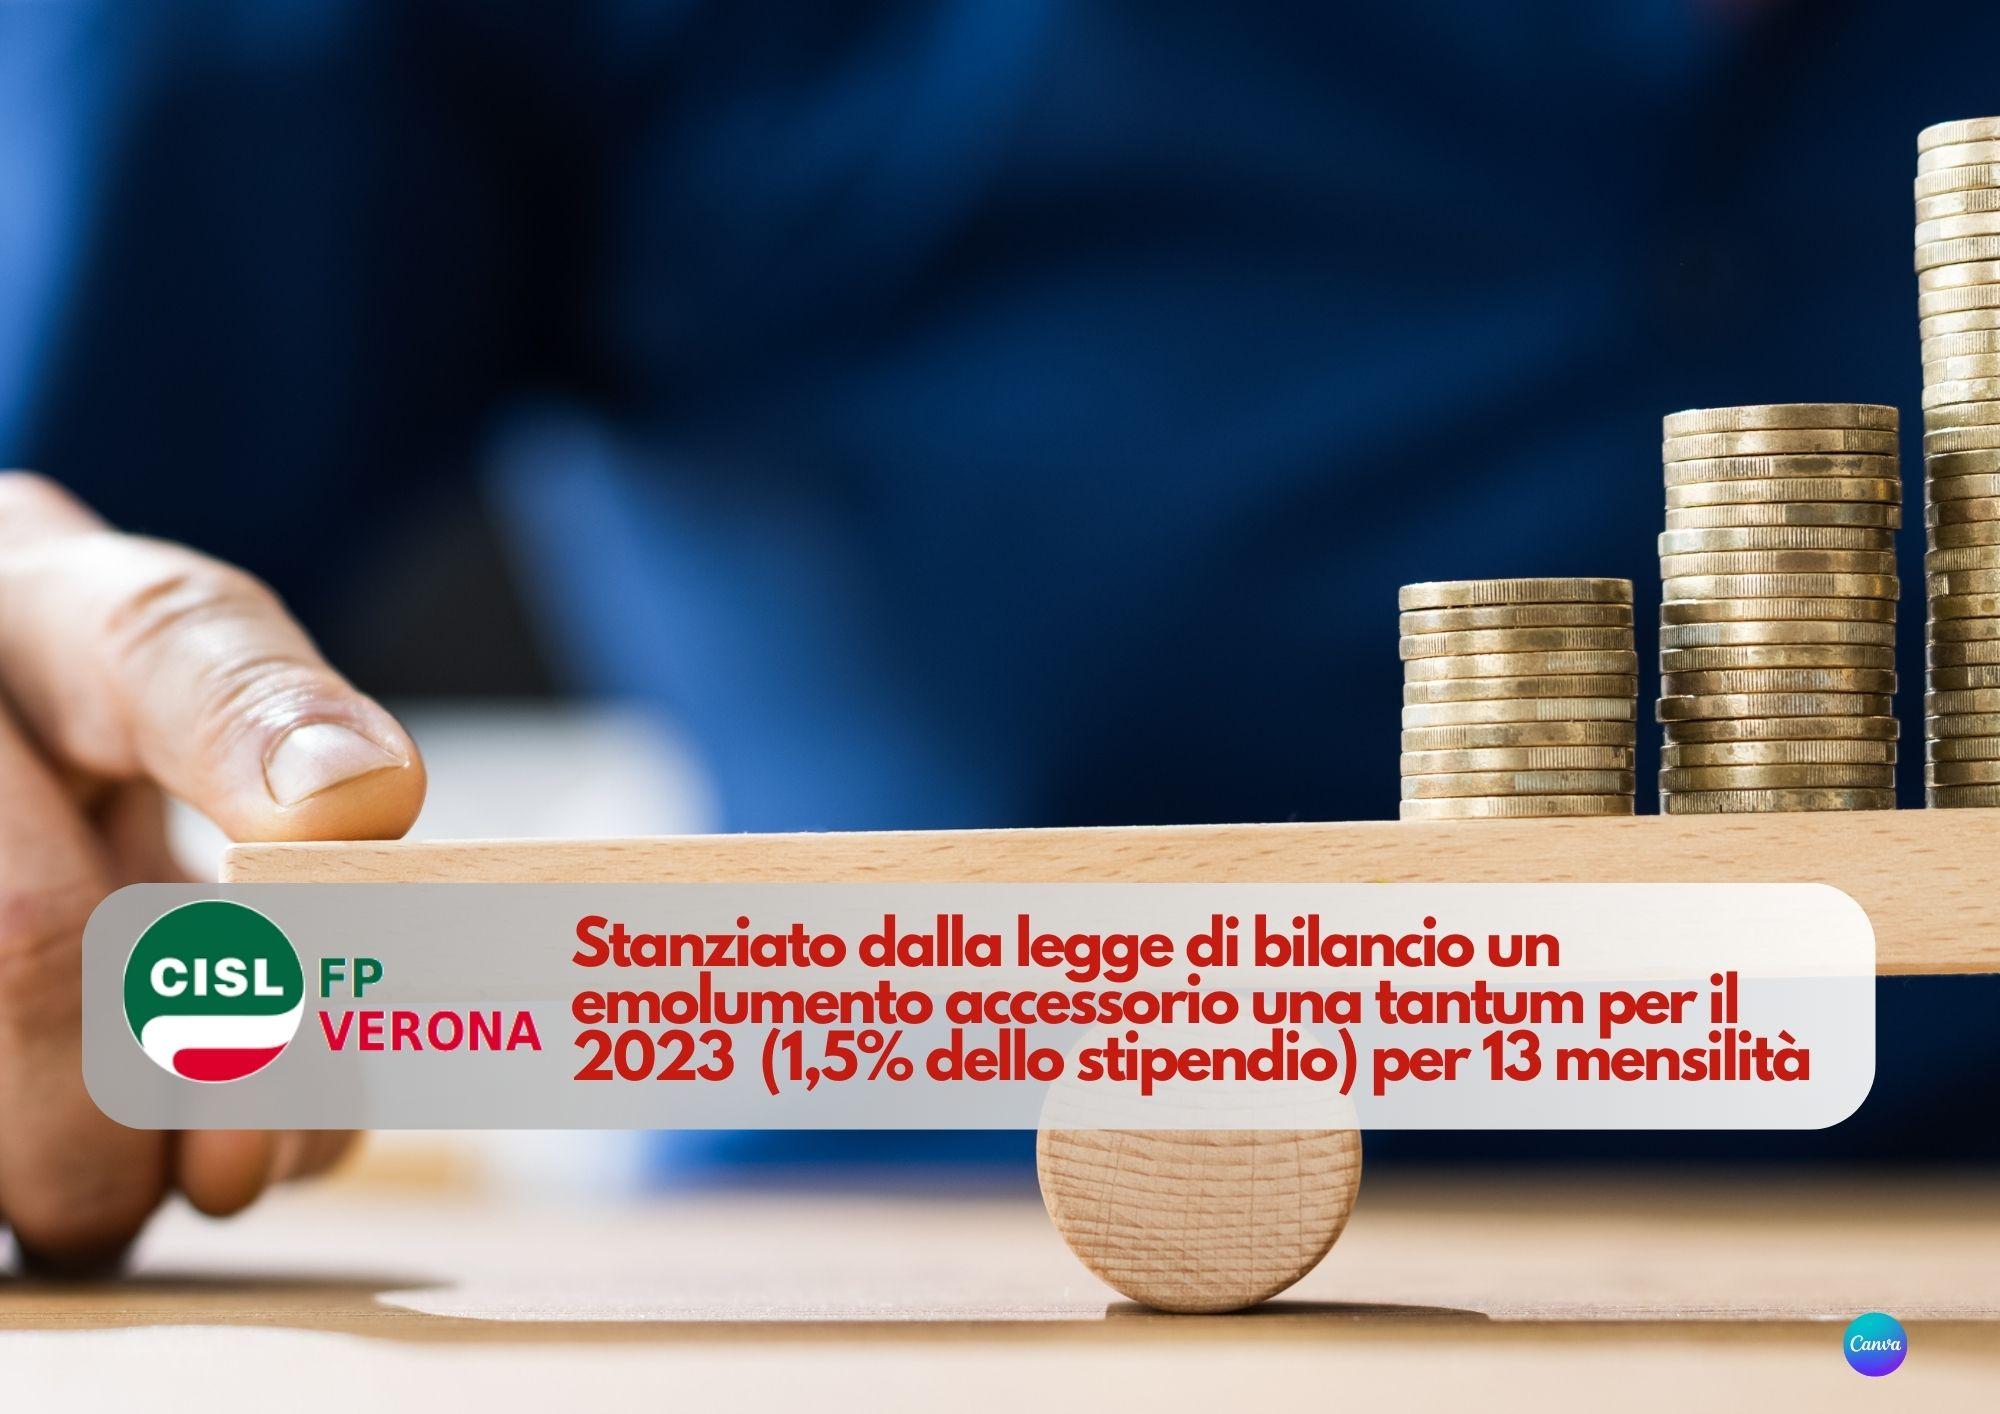 CISL FP Verona. Pubblico impiego. Emolumento accessorio una tantum 2023 1,5% dello stipendio per 13 mensilità